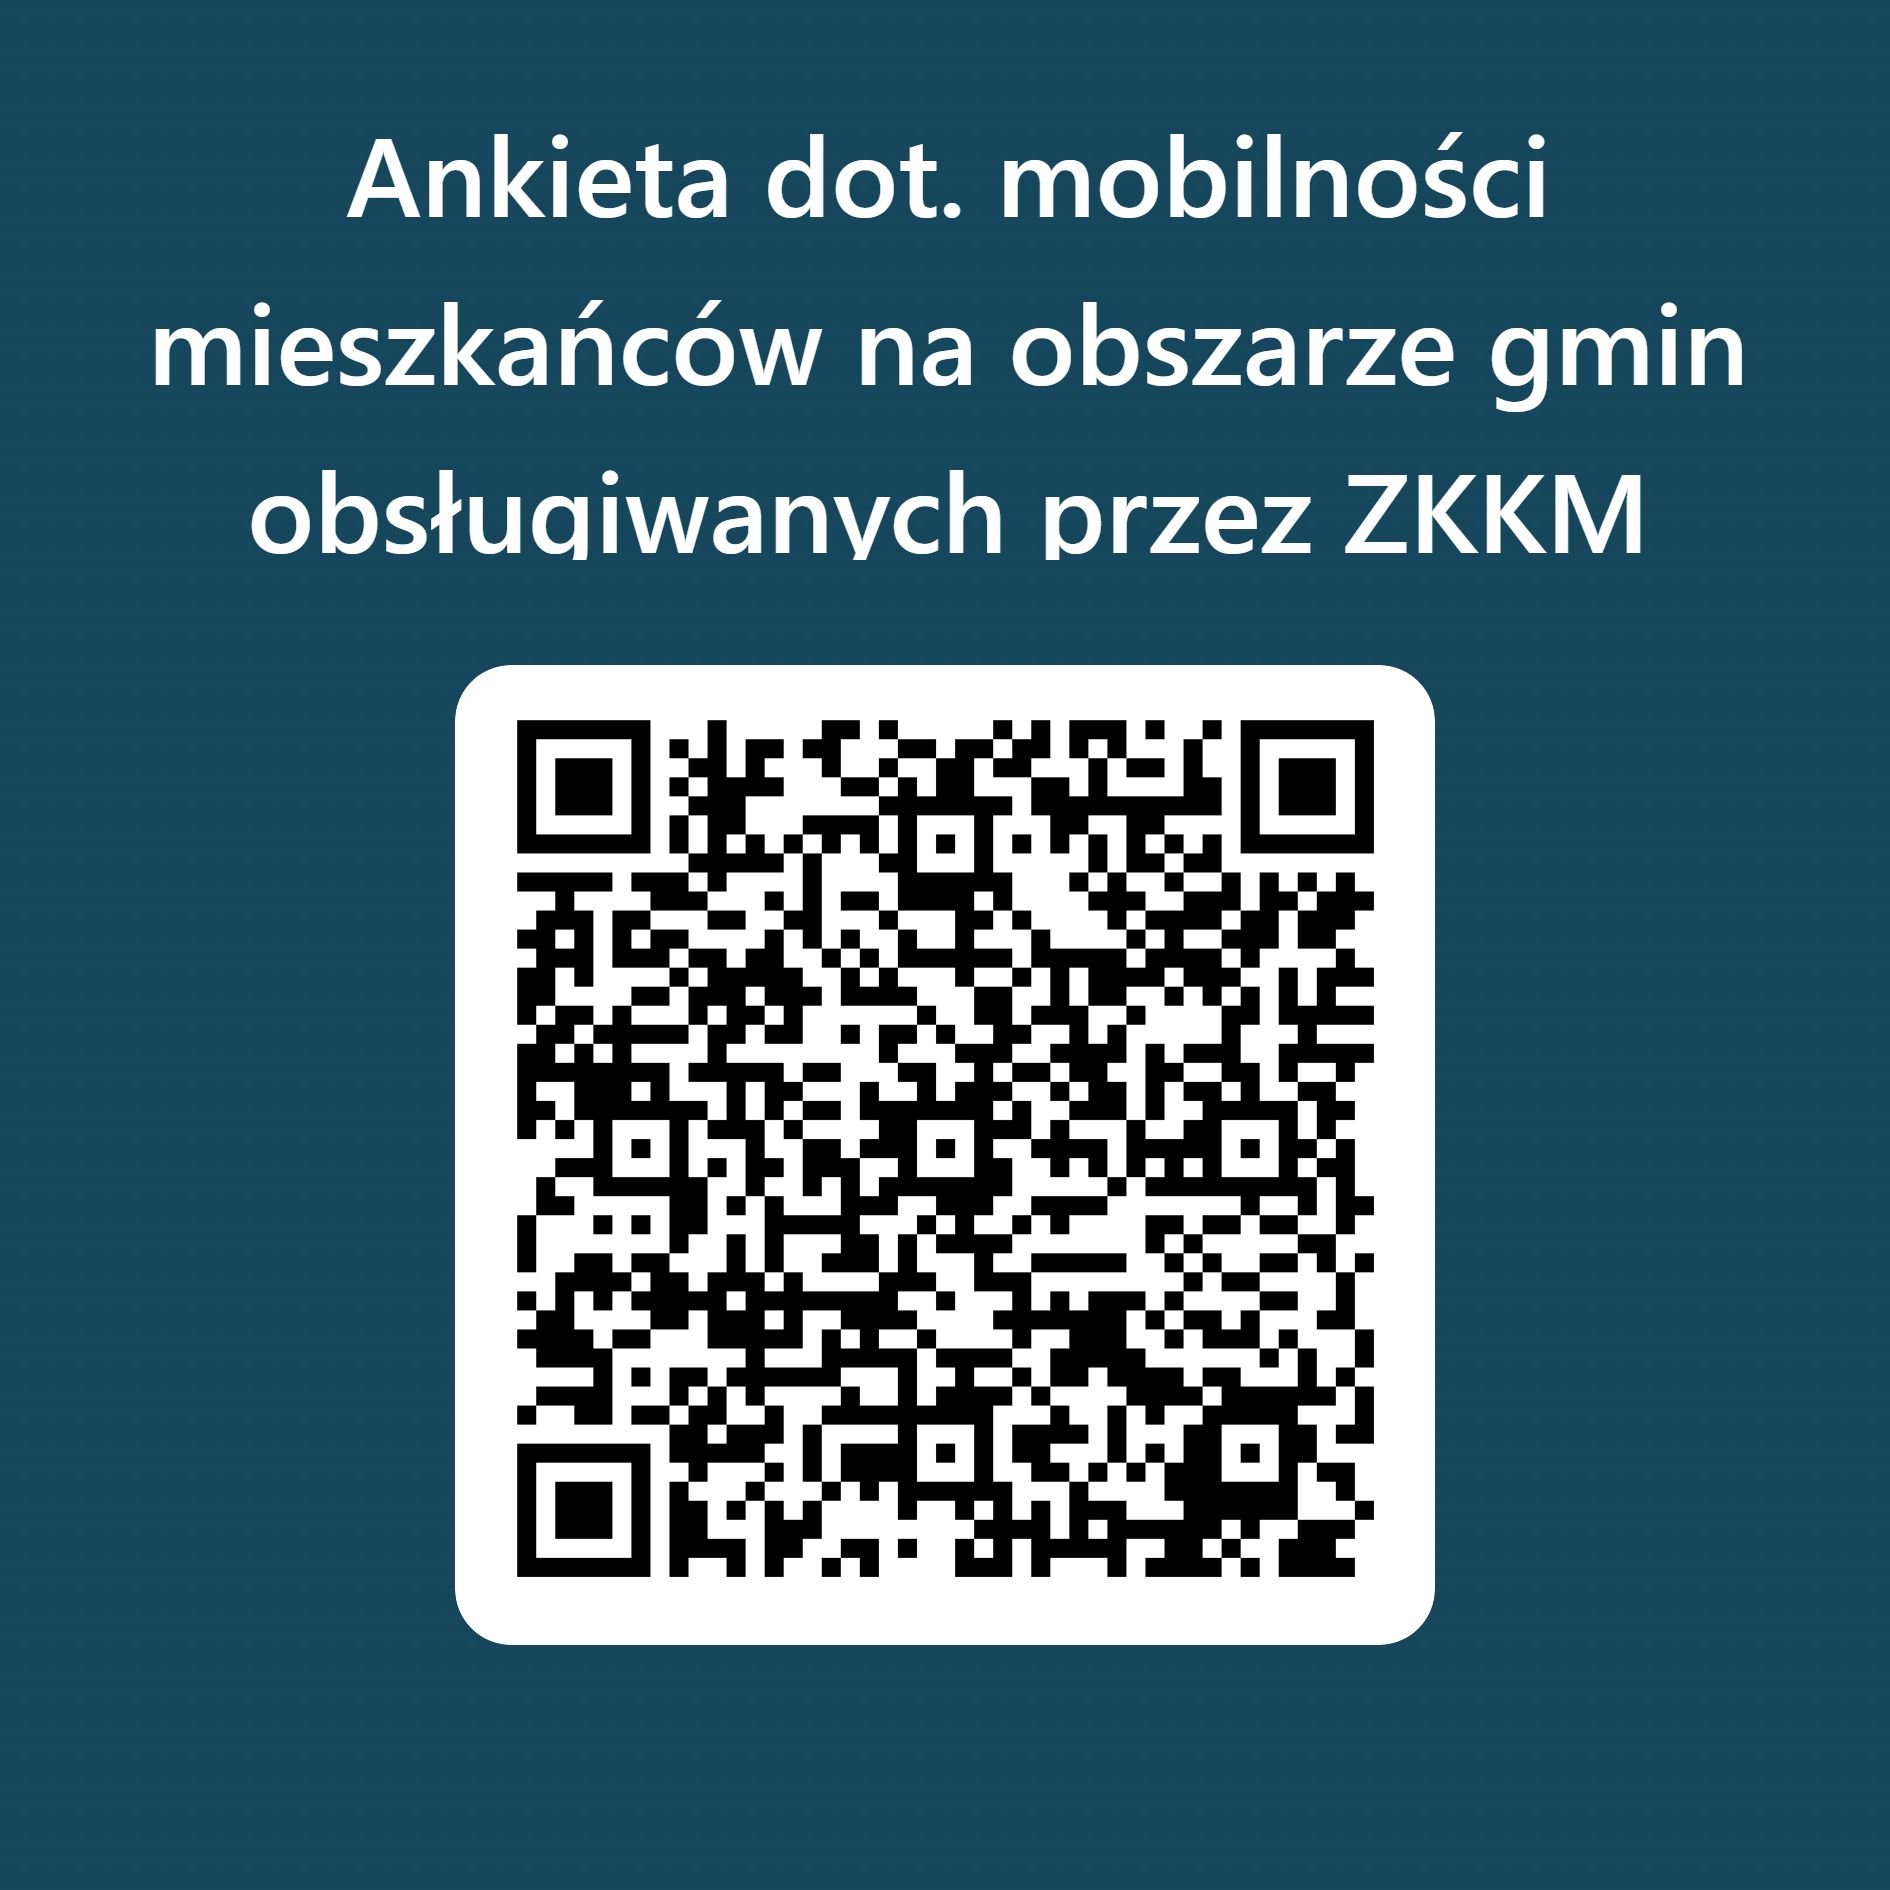 QRCode dla Ankieta dot. mobilności mieszkańców na obszarze przez ZKKM Chrzanów